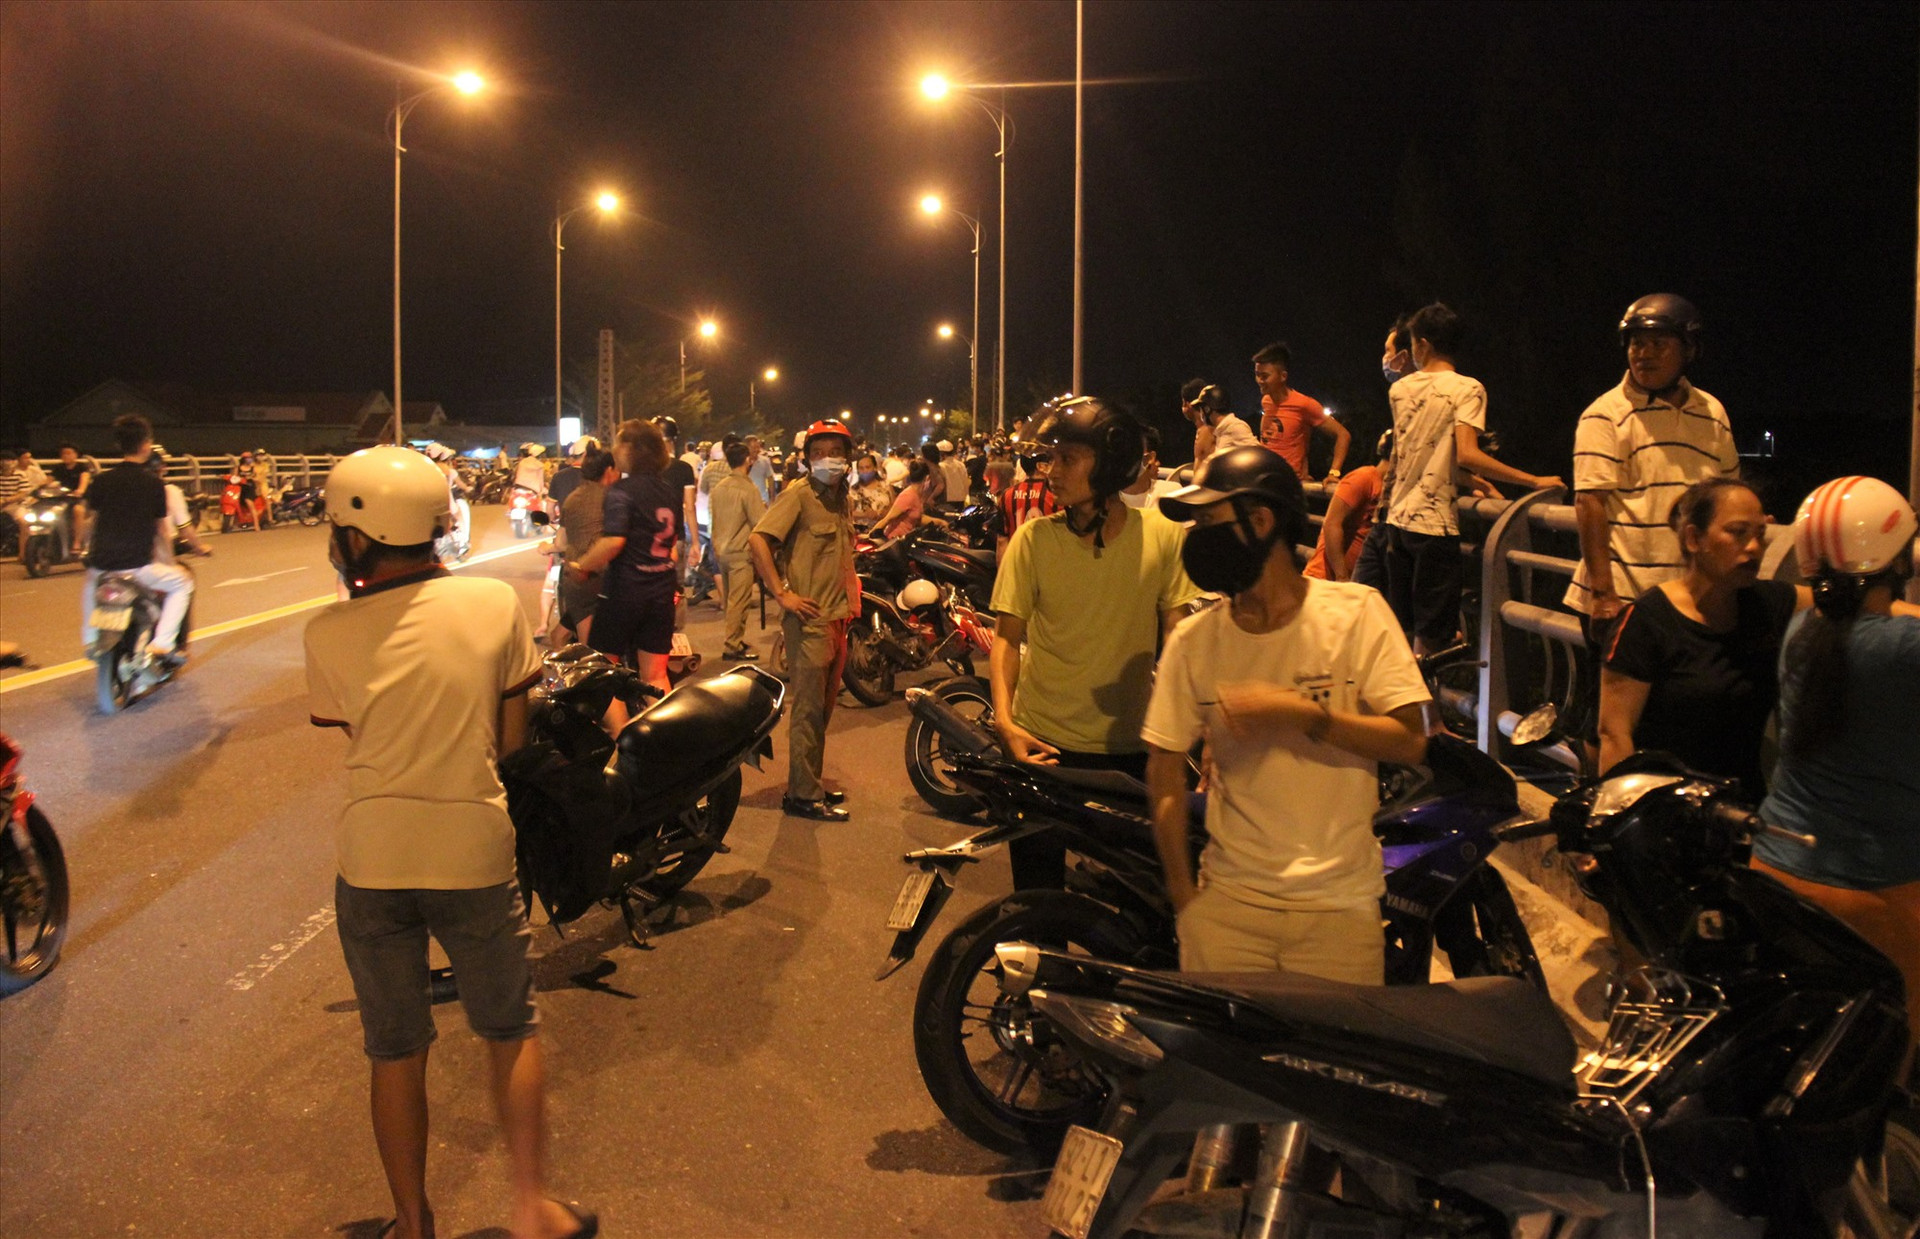 Hàng trăm người có mặt tại khu vực cầu Kỳ Phú để theo dõi lực lượng chức năng tìm kiếm thanh niên nghi mất tích do nhảy cầu. Ảnh: HOÀI AN